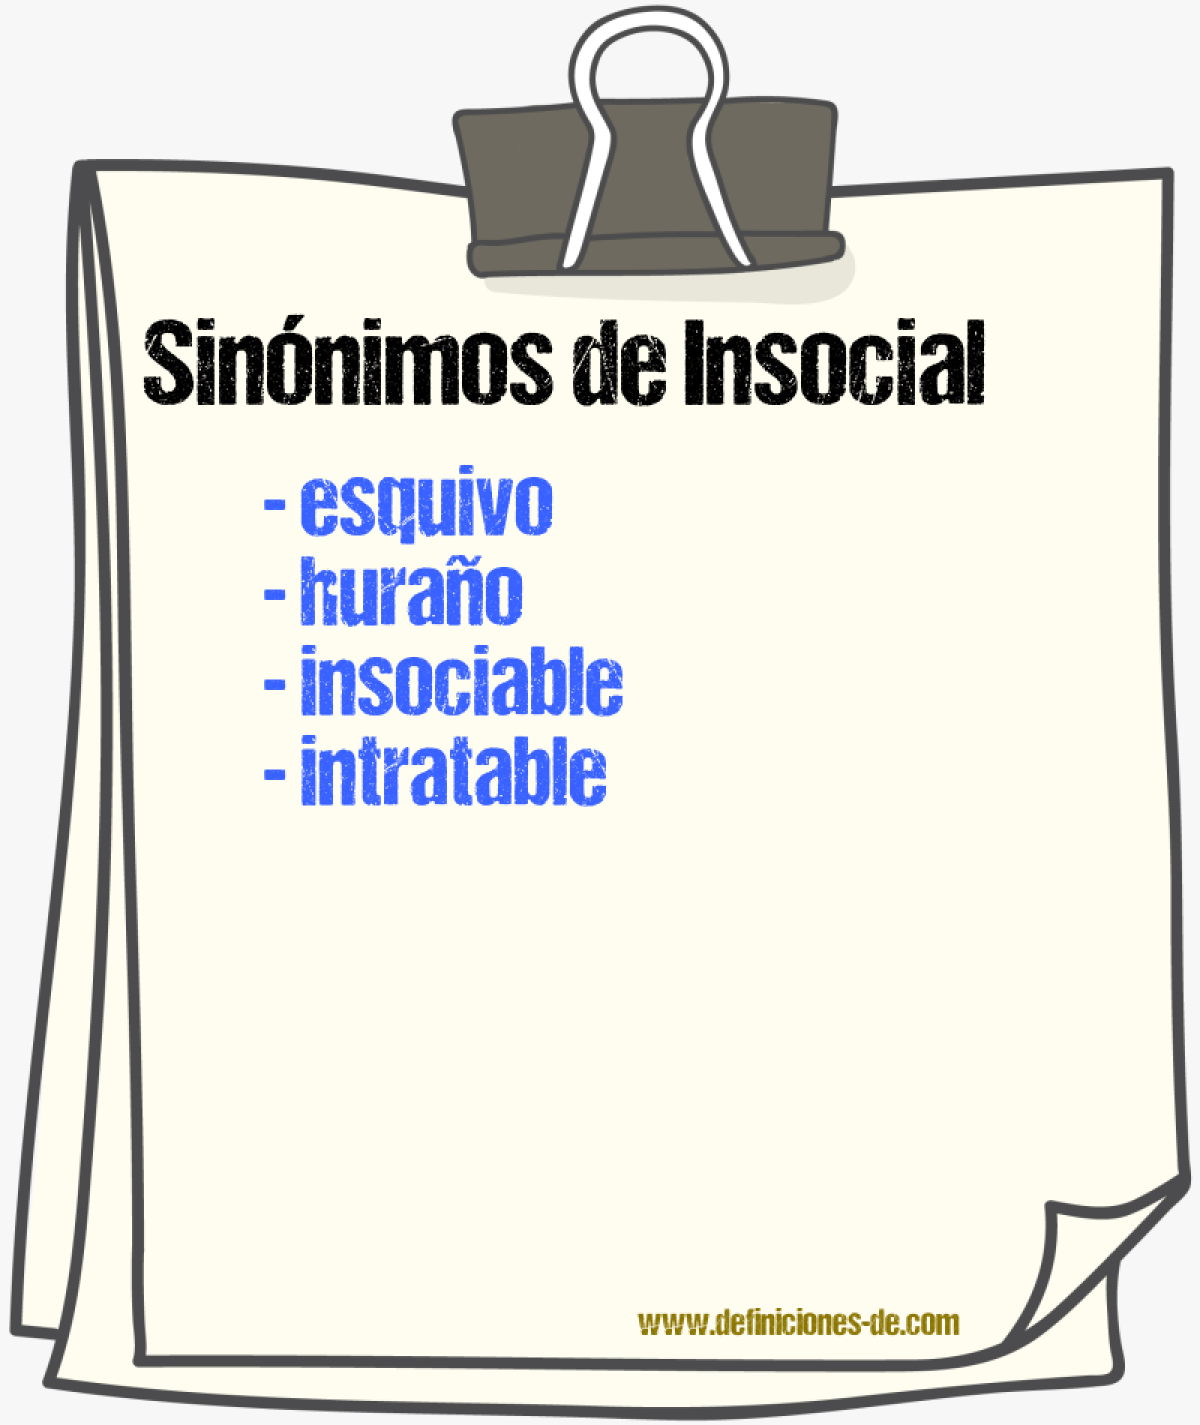 Sinónimos de insocial